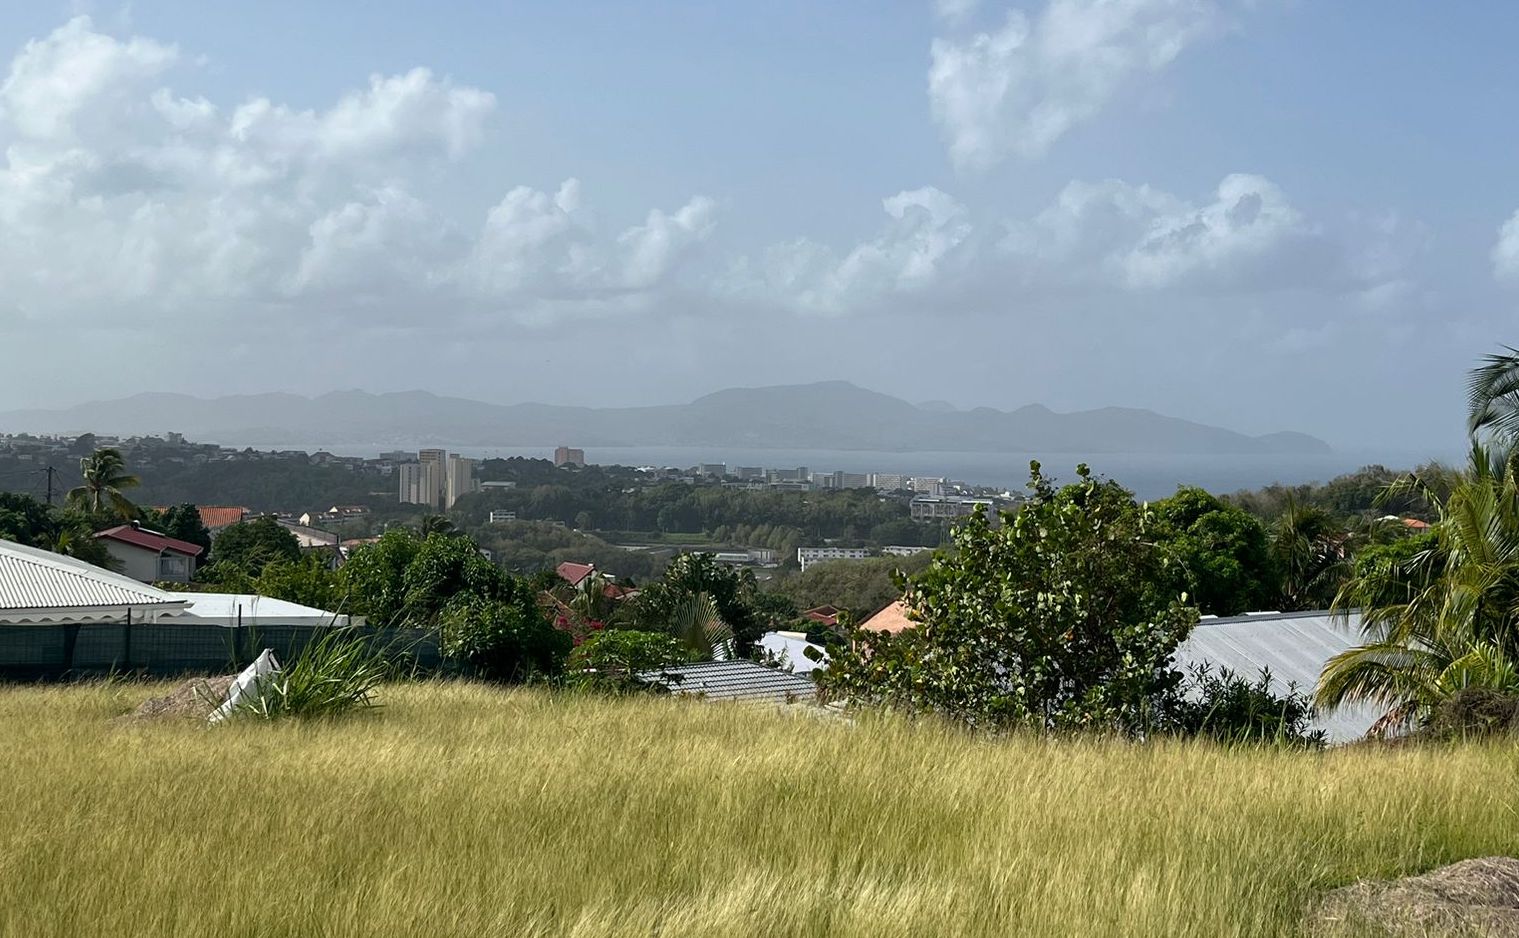     Le retour de la brume de sable dans le ciel de Martinique

